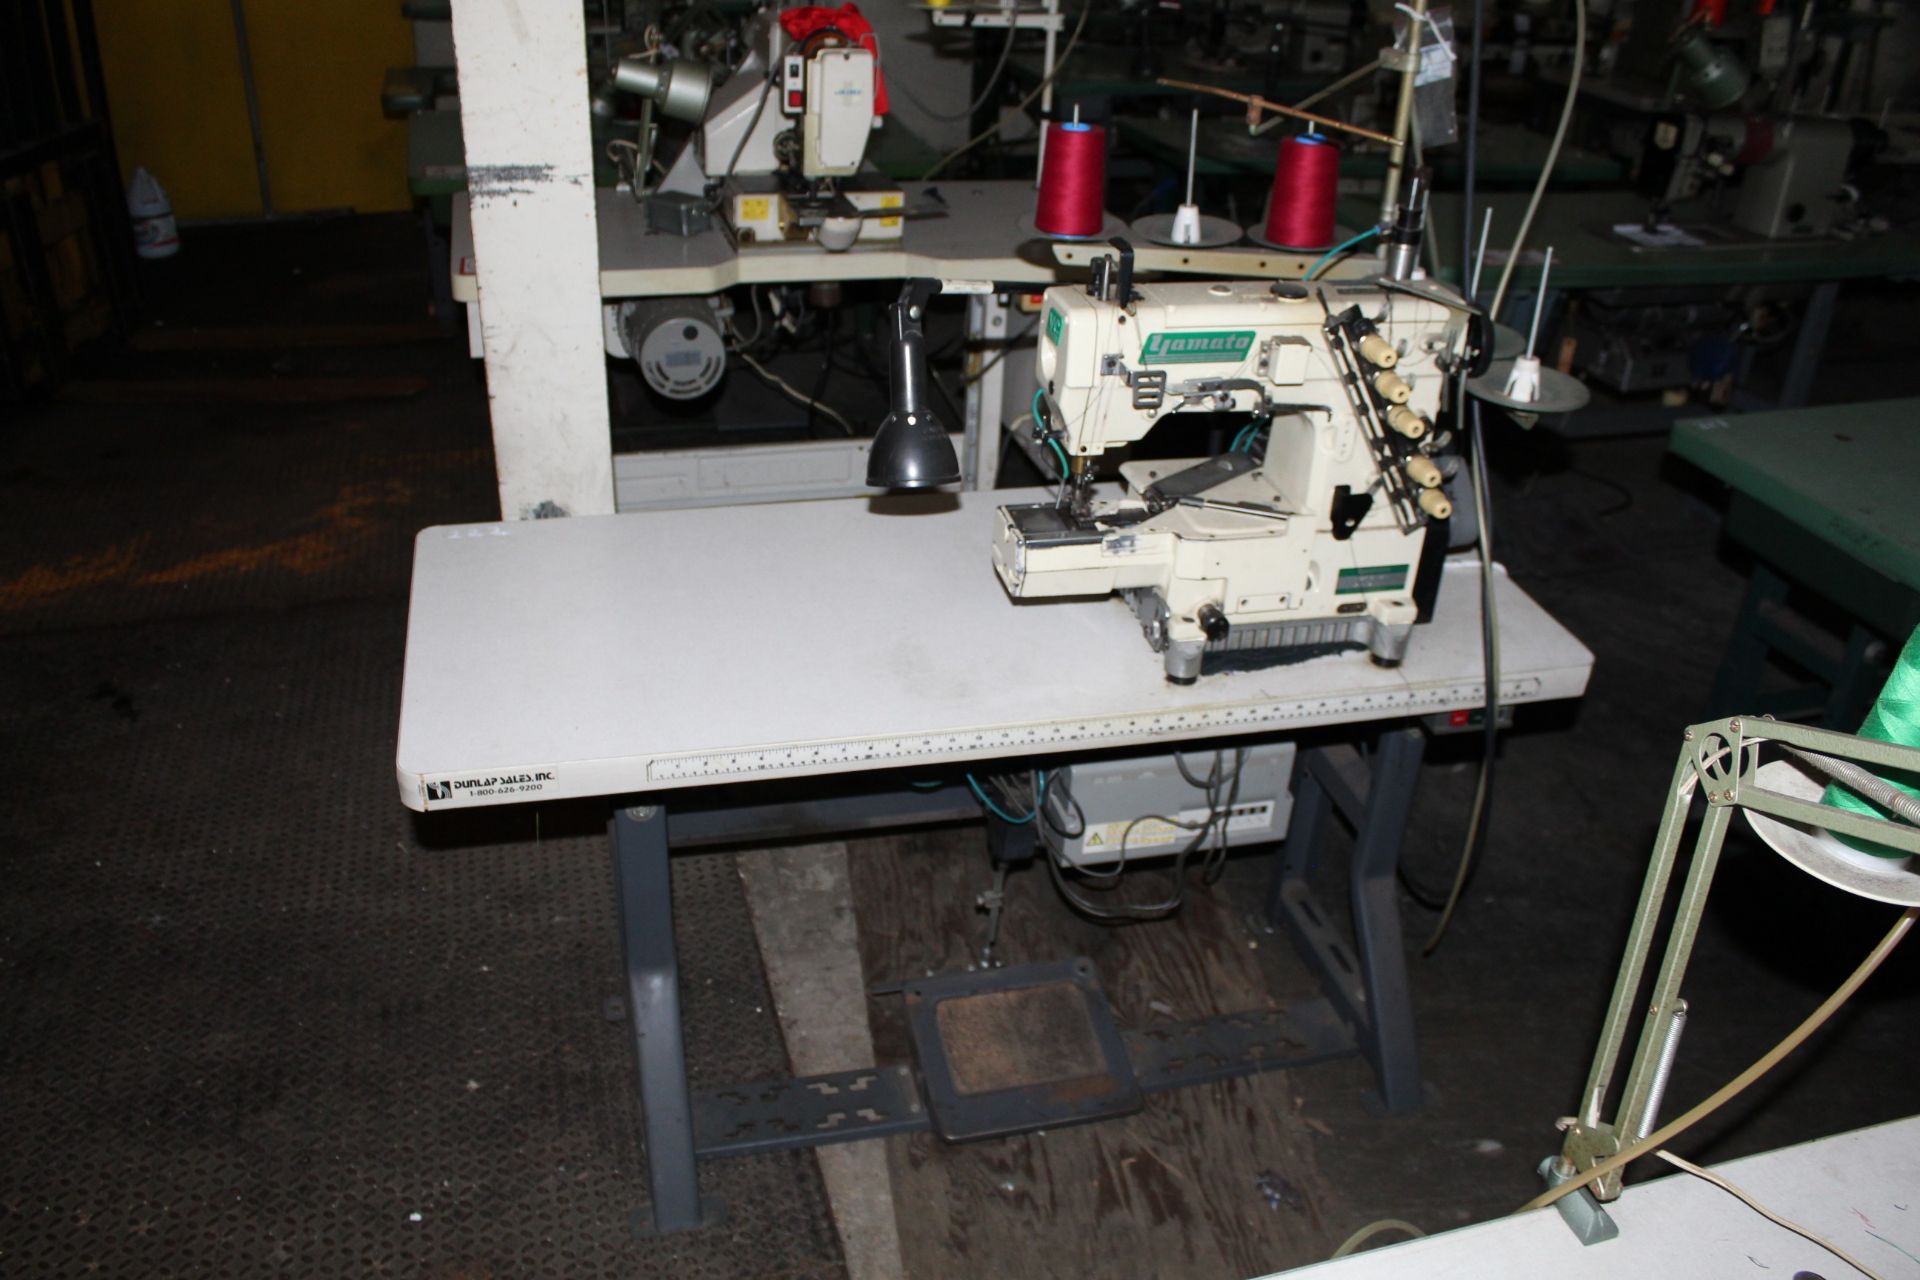 (2) Yomato Model VC2713-1561-1 2 Needle Sewing Machines - Image 2 of 3